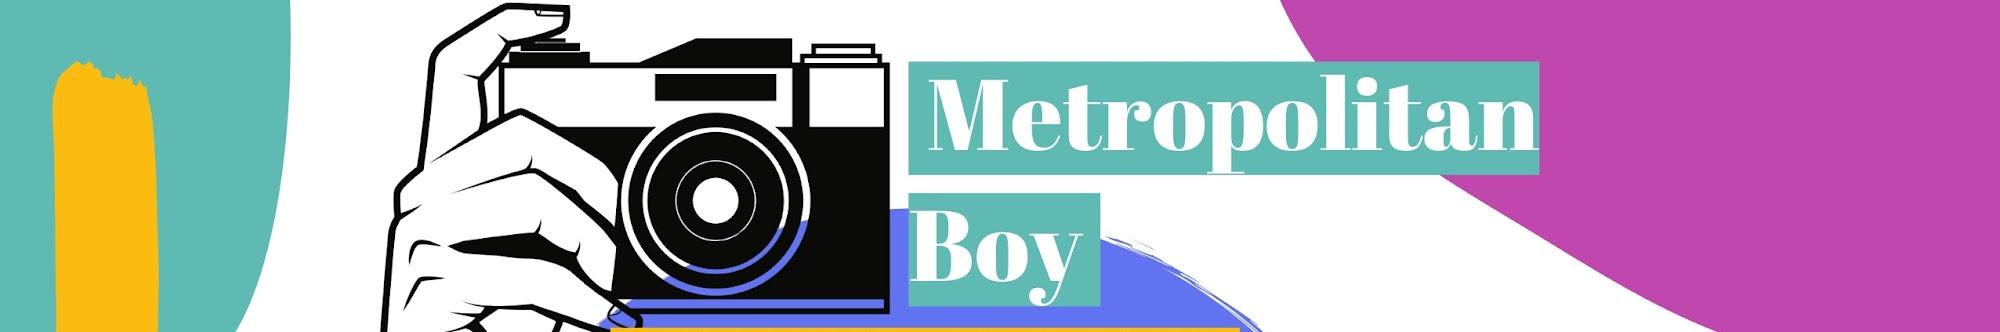 Metropolitan boy